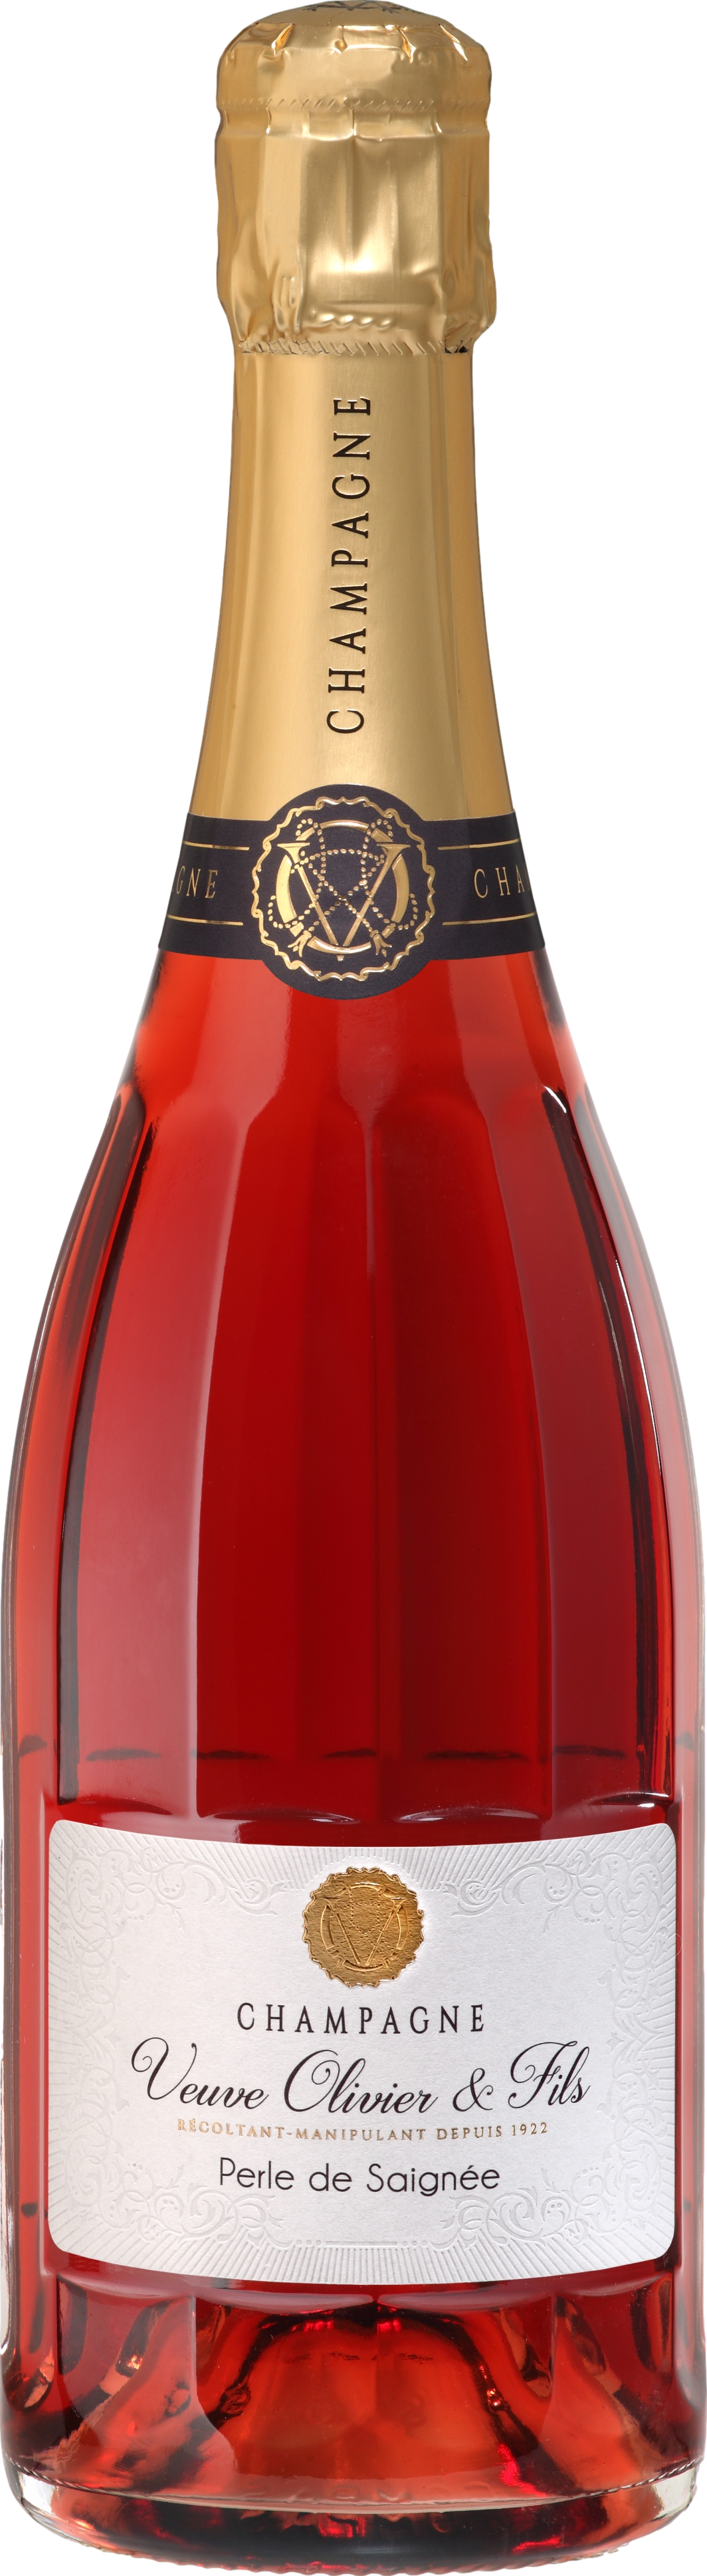 Champagne Veuve Olivier а Fils Perle de Saignee Brut Šumivé 12.0% 0.75 l